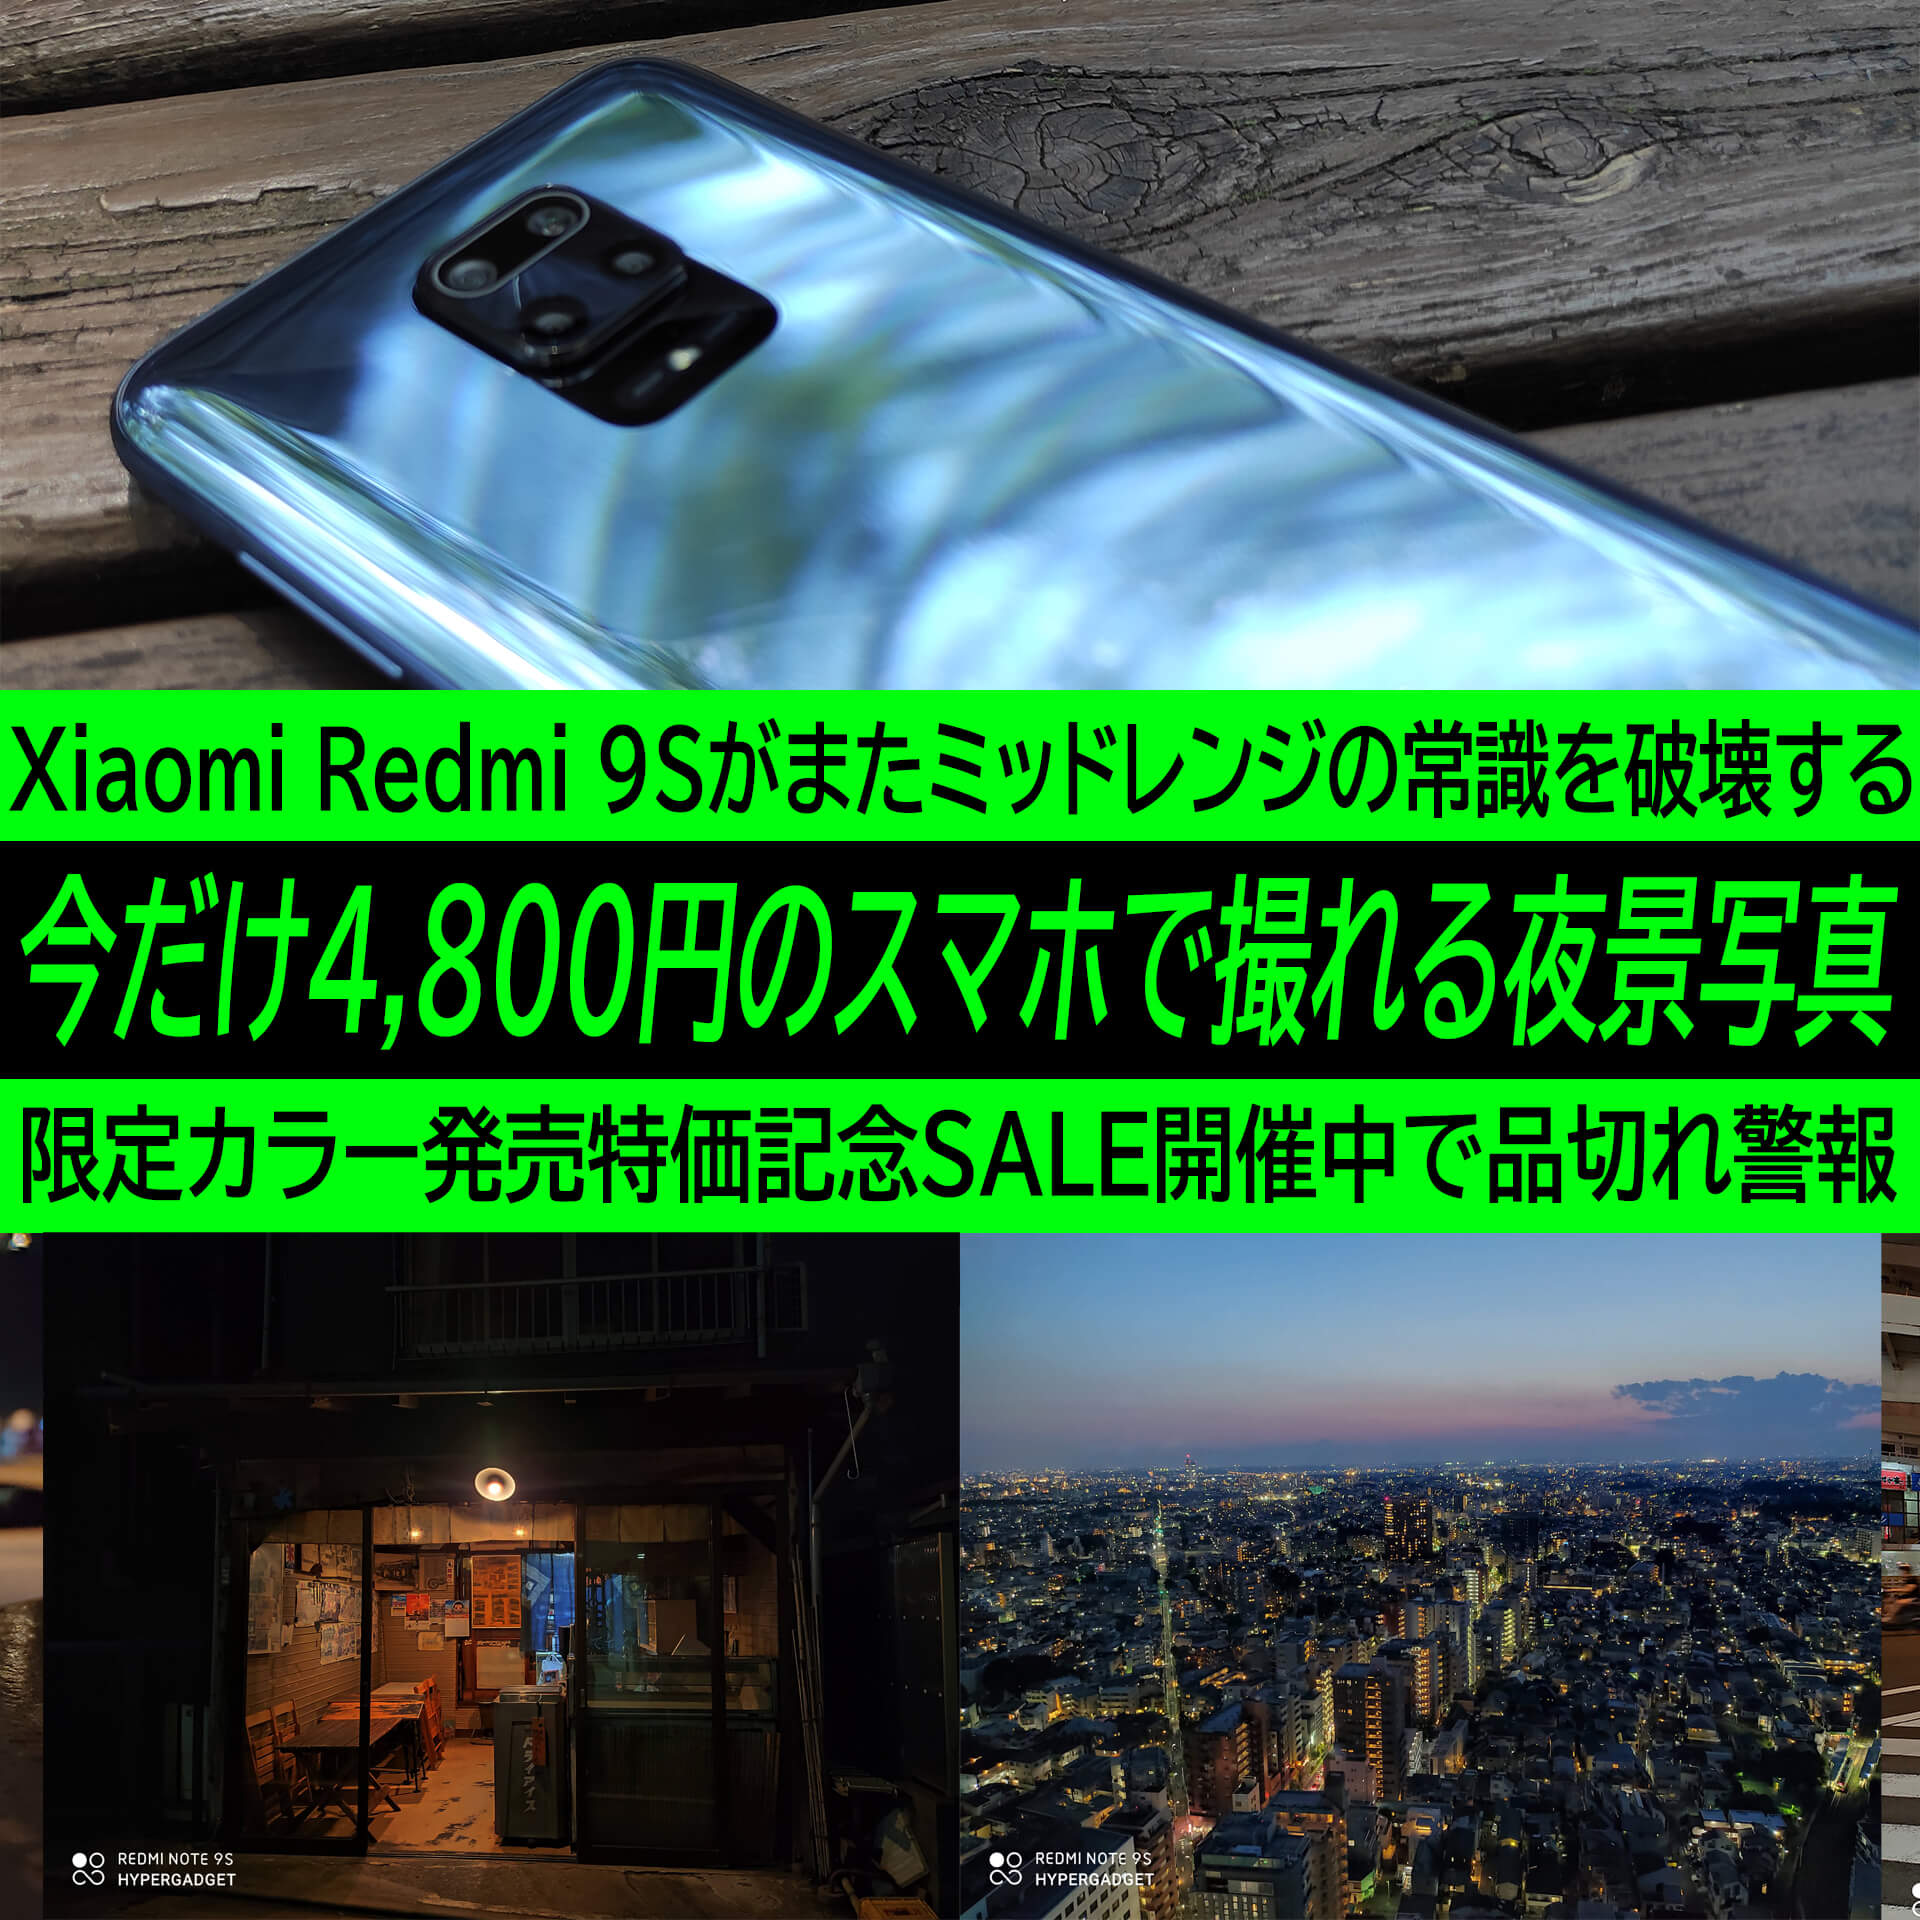 今だけ4,800円で買えるシャオミのRedmi Note 9Sで夜景を撮ってみた 